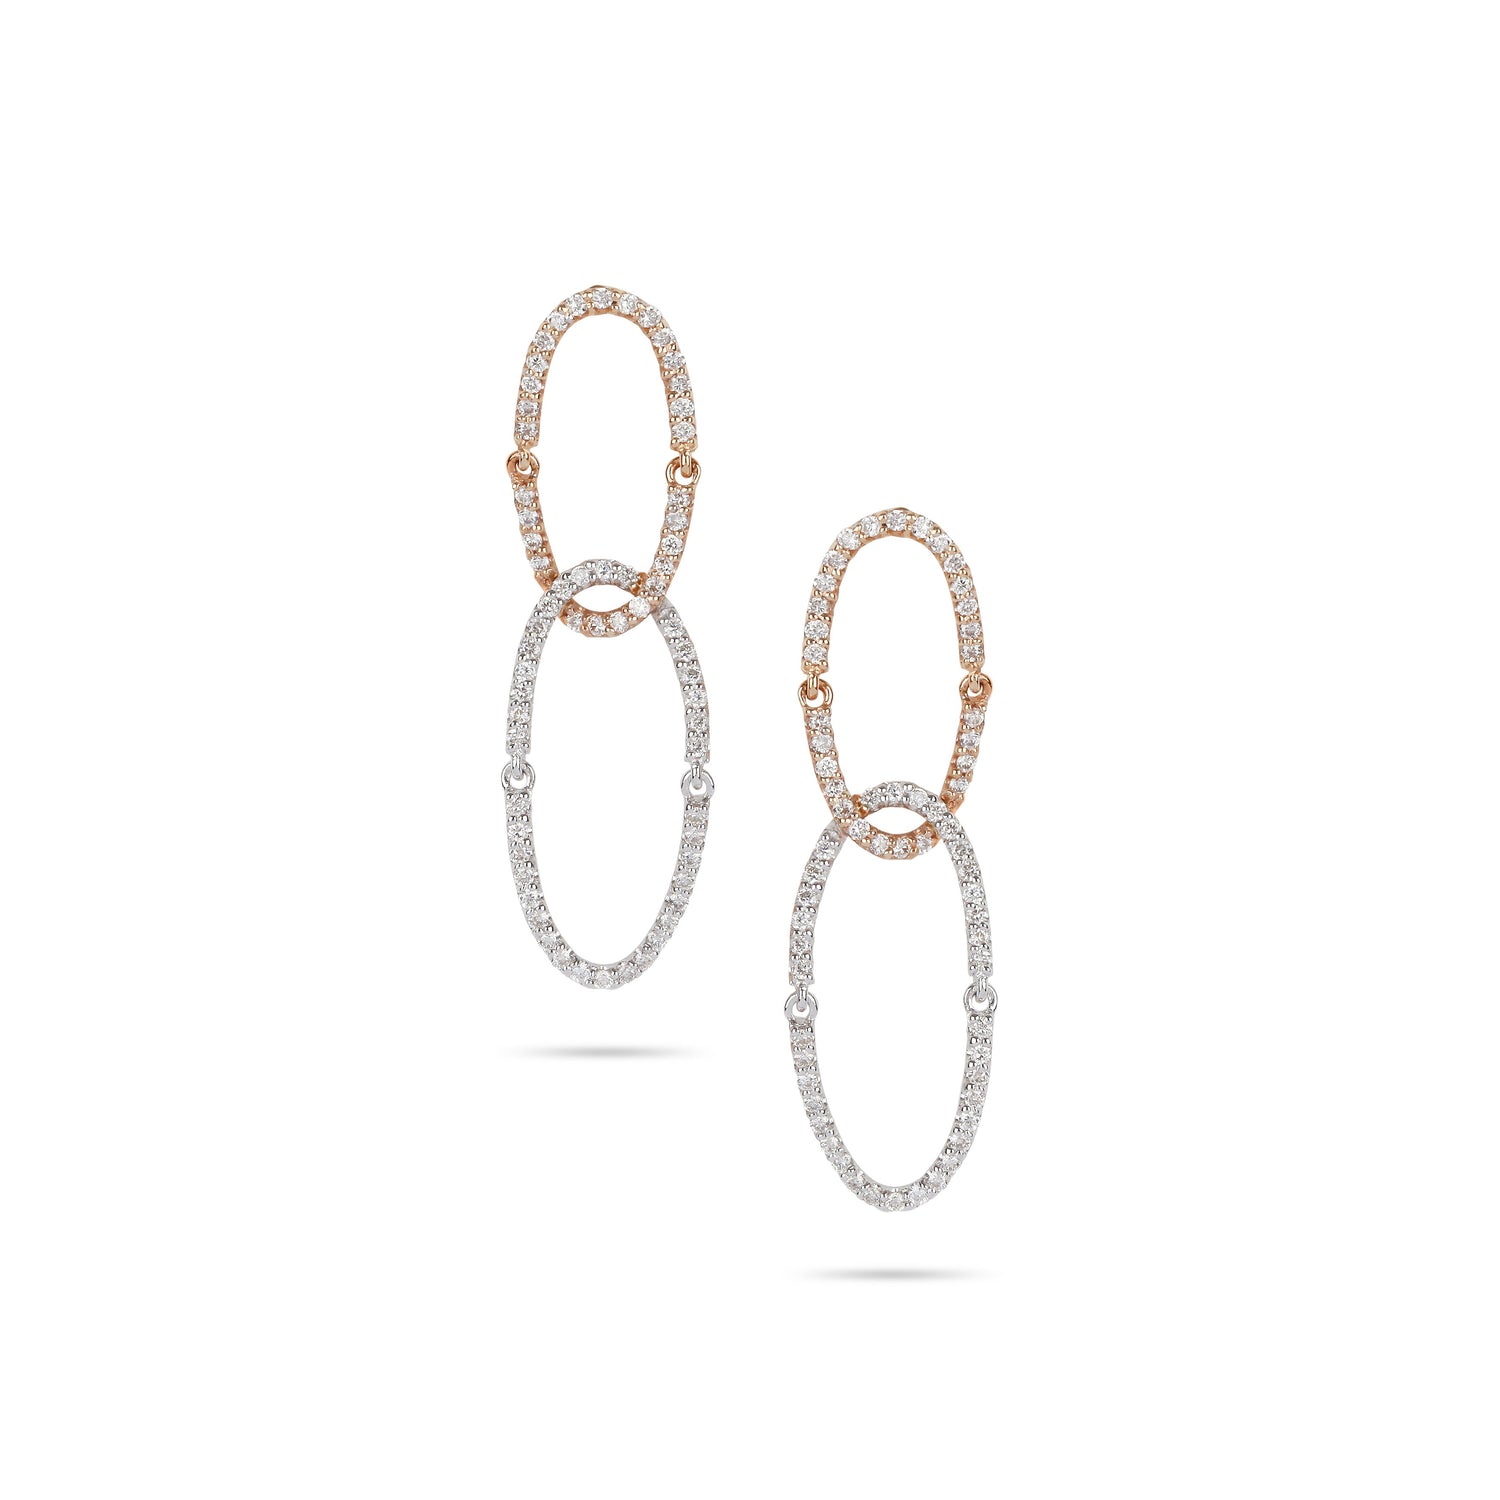 Oval Loops Earrings | Jewelry online shop